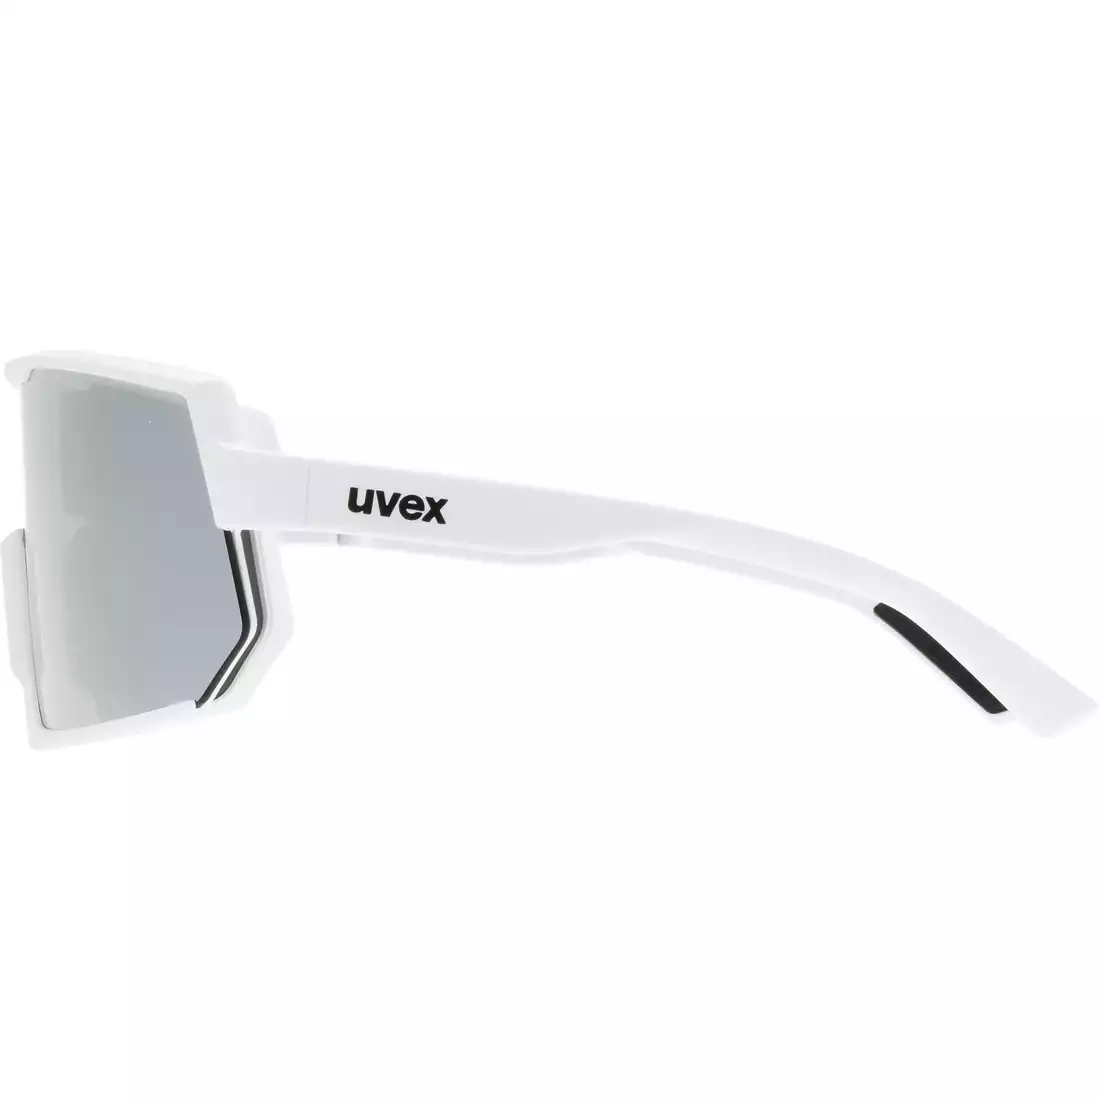 UVEX okulary sportowe Sportstyle 235 mirror silver (S3), biały